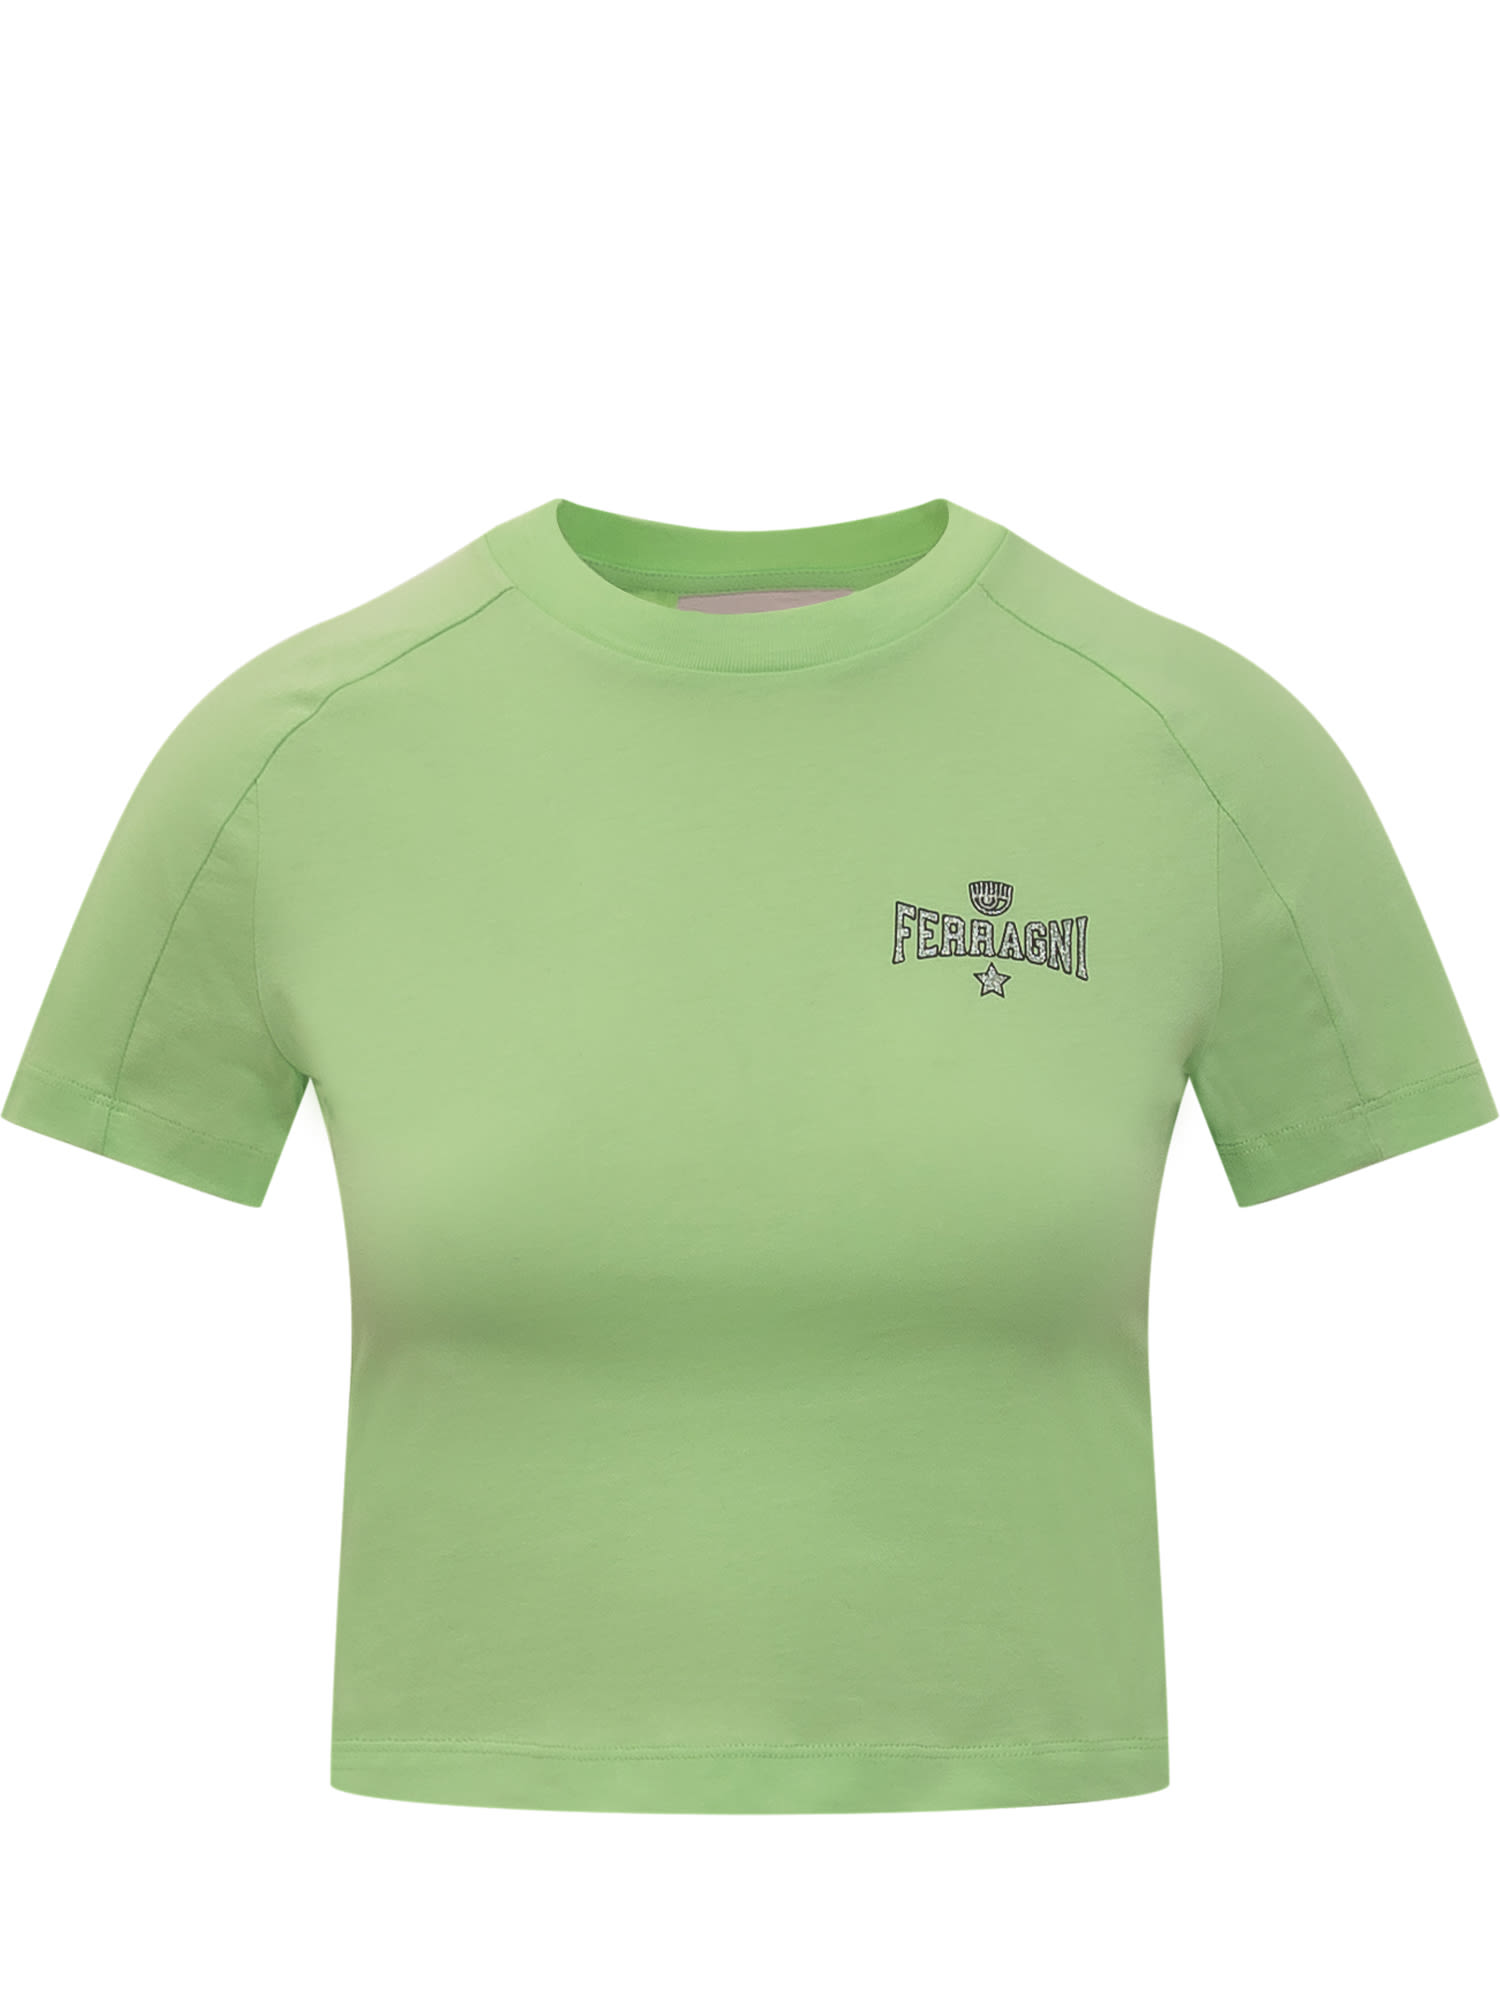 Ferragni 602 T-shirt